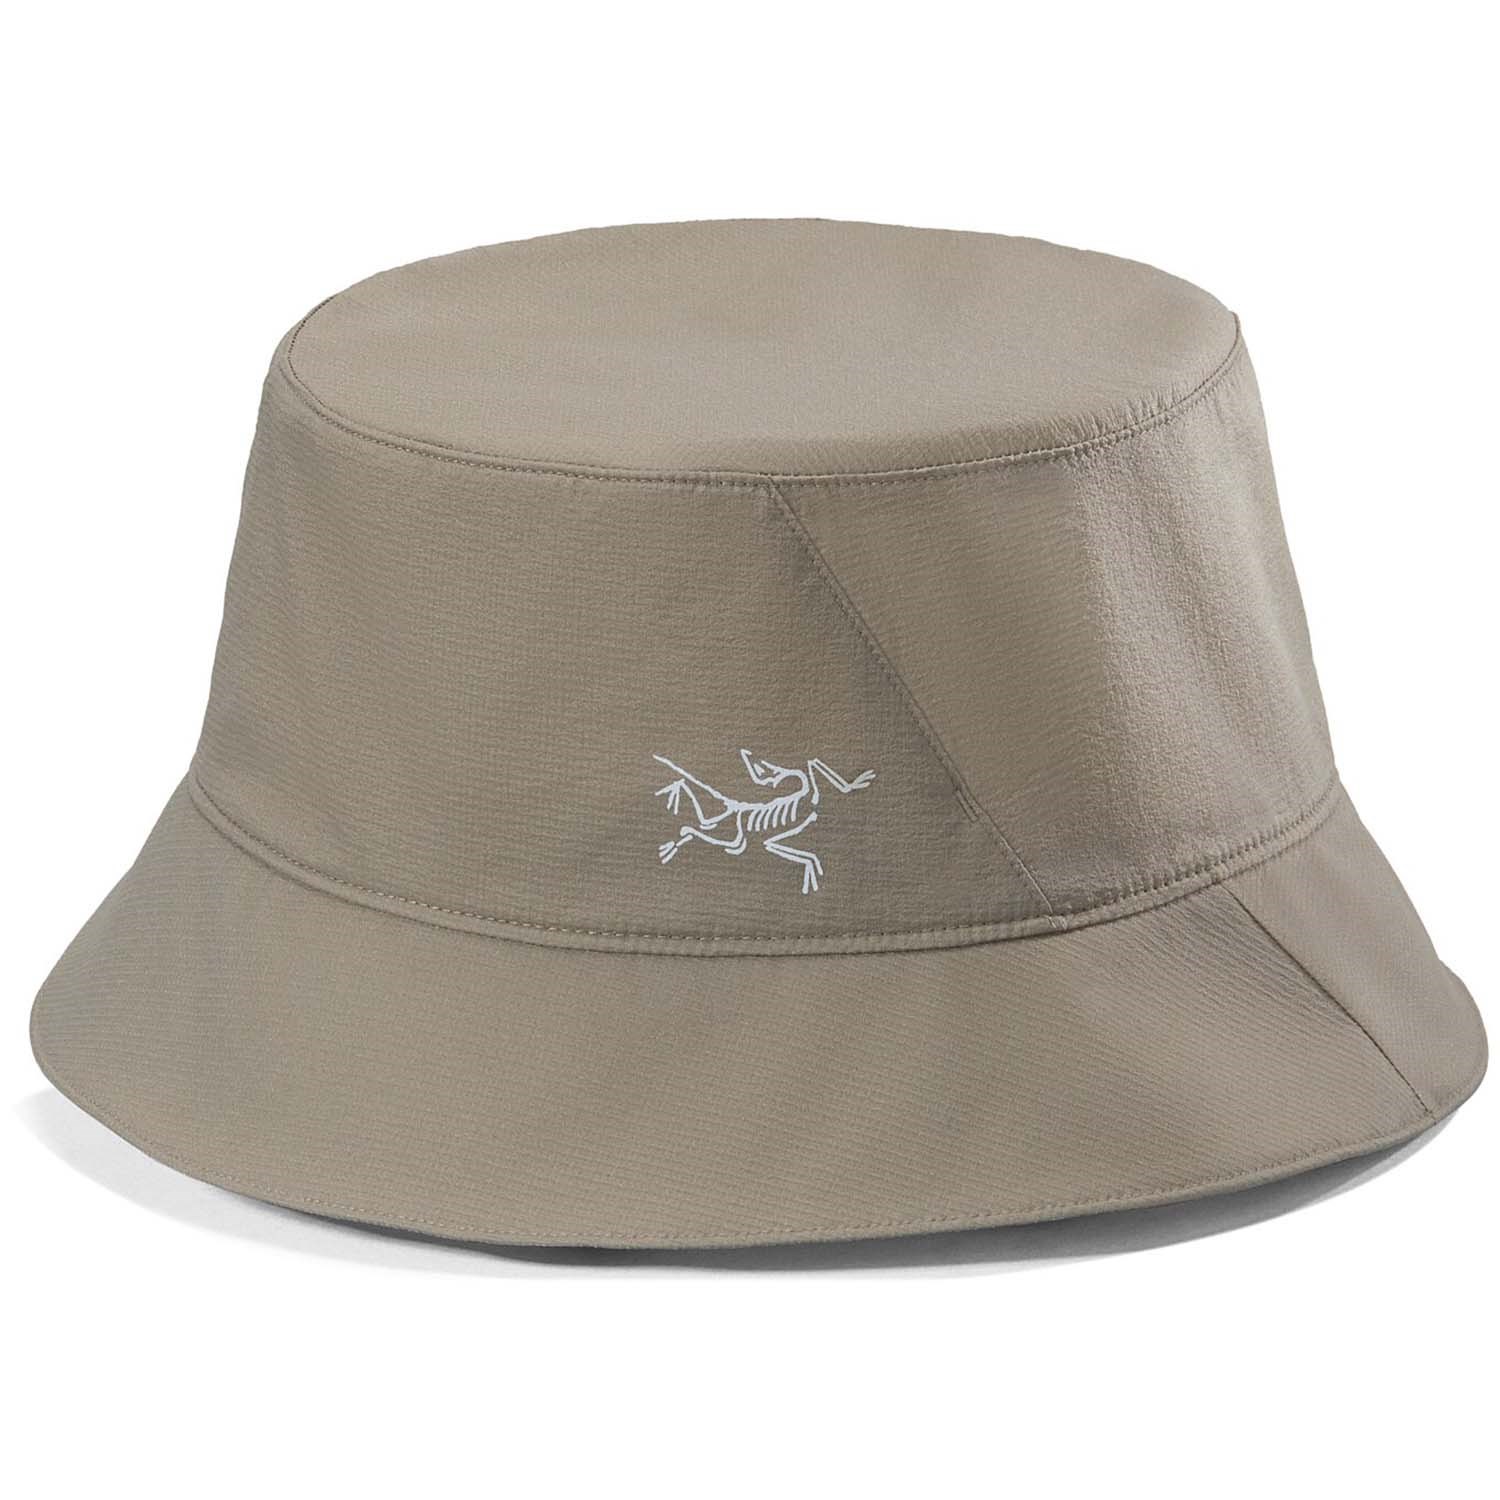 Arc'teryx Aerios Bucket Hat, Forage / S-M